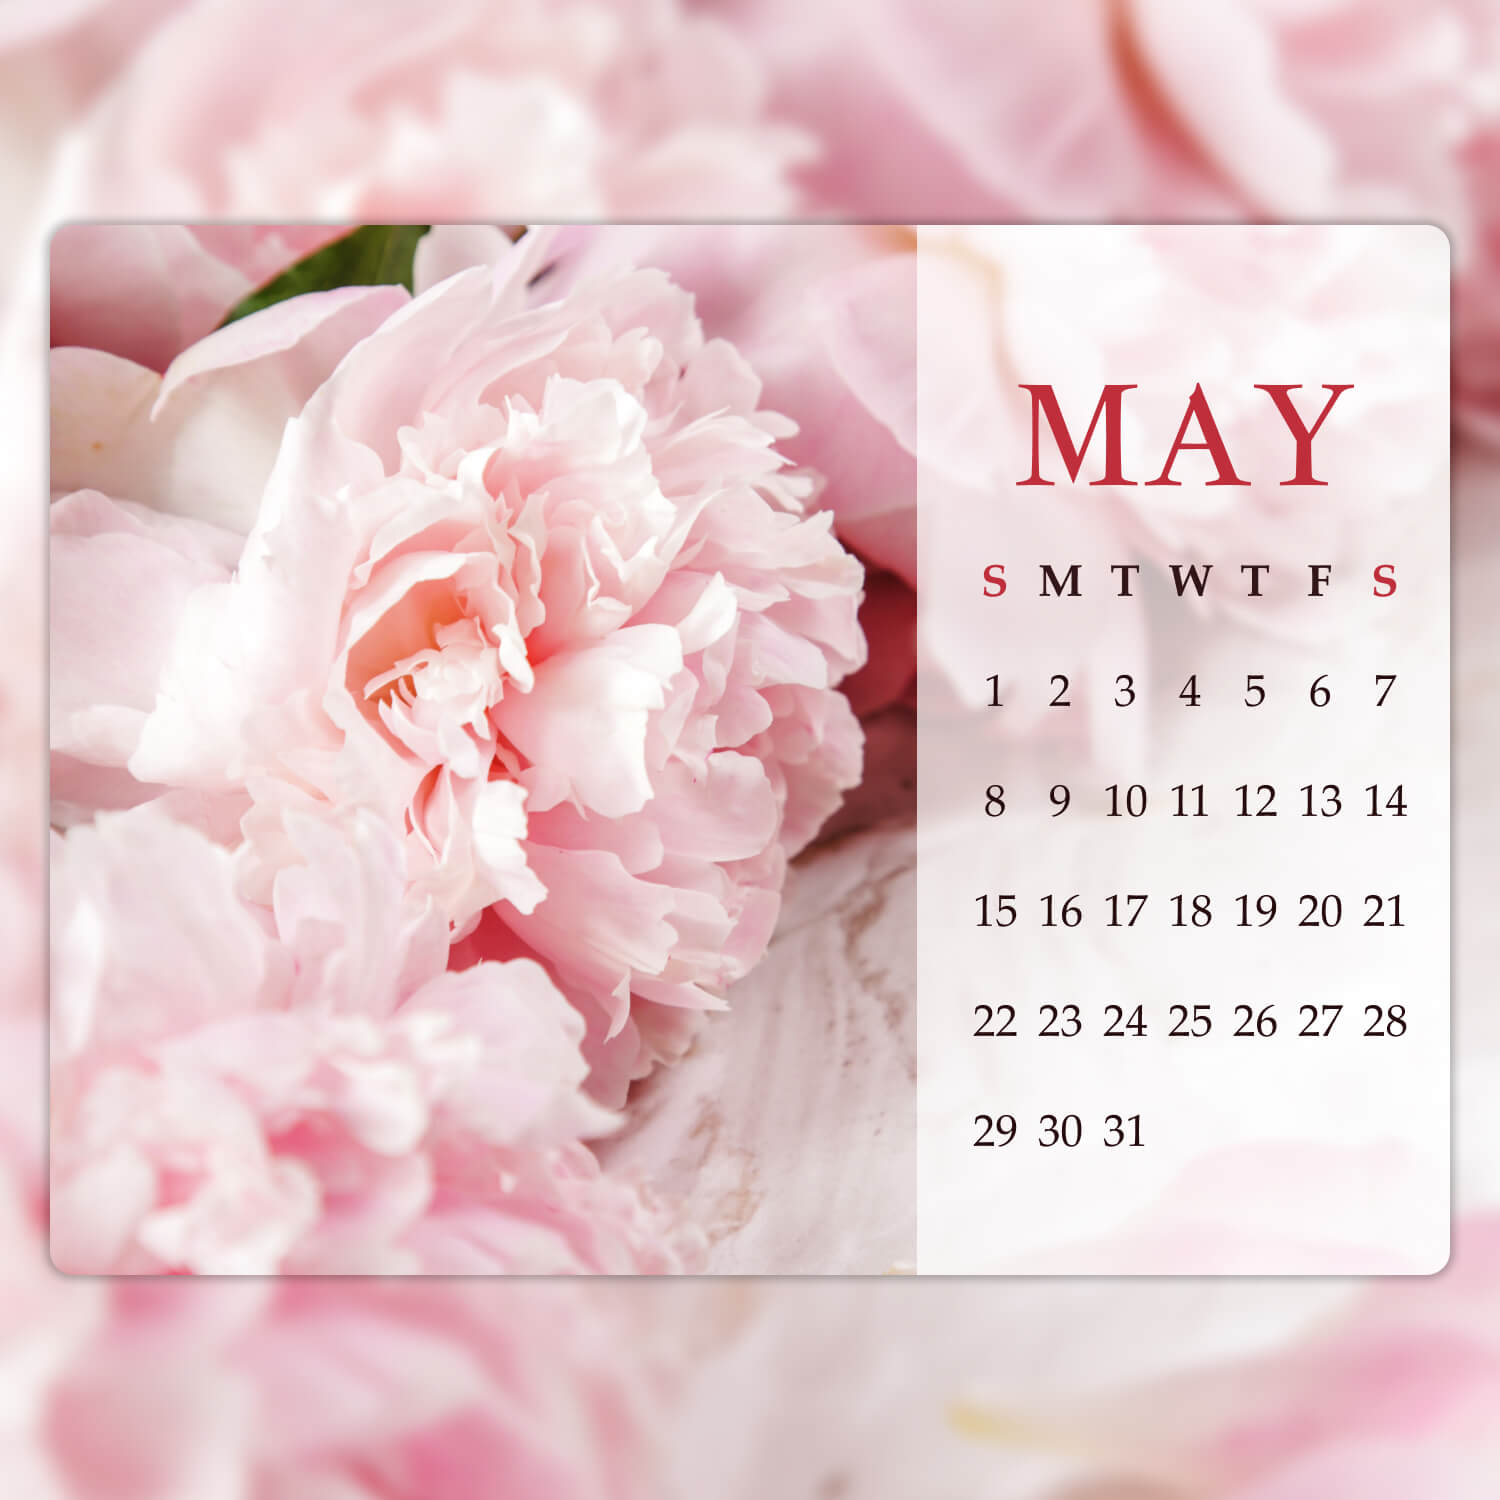 Lấy cảm hứng từ những bông hoa mẫu đơn tuyệt đẹp, Peony Editable May Calendar sẽ giúp bạn thêm động lực và sáng tạo trong công việc. Với thiết kế đầy màu sắc và có thể chỉnh sửa, lịch tháng 5 này sẽ giúp bạn quản lý thời gian và làm việc hiệu quả hơn. Hãy cùng cập nhật ngay để có những khoảnh khắc làm việc đầy niềm vui và cảm hứng.